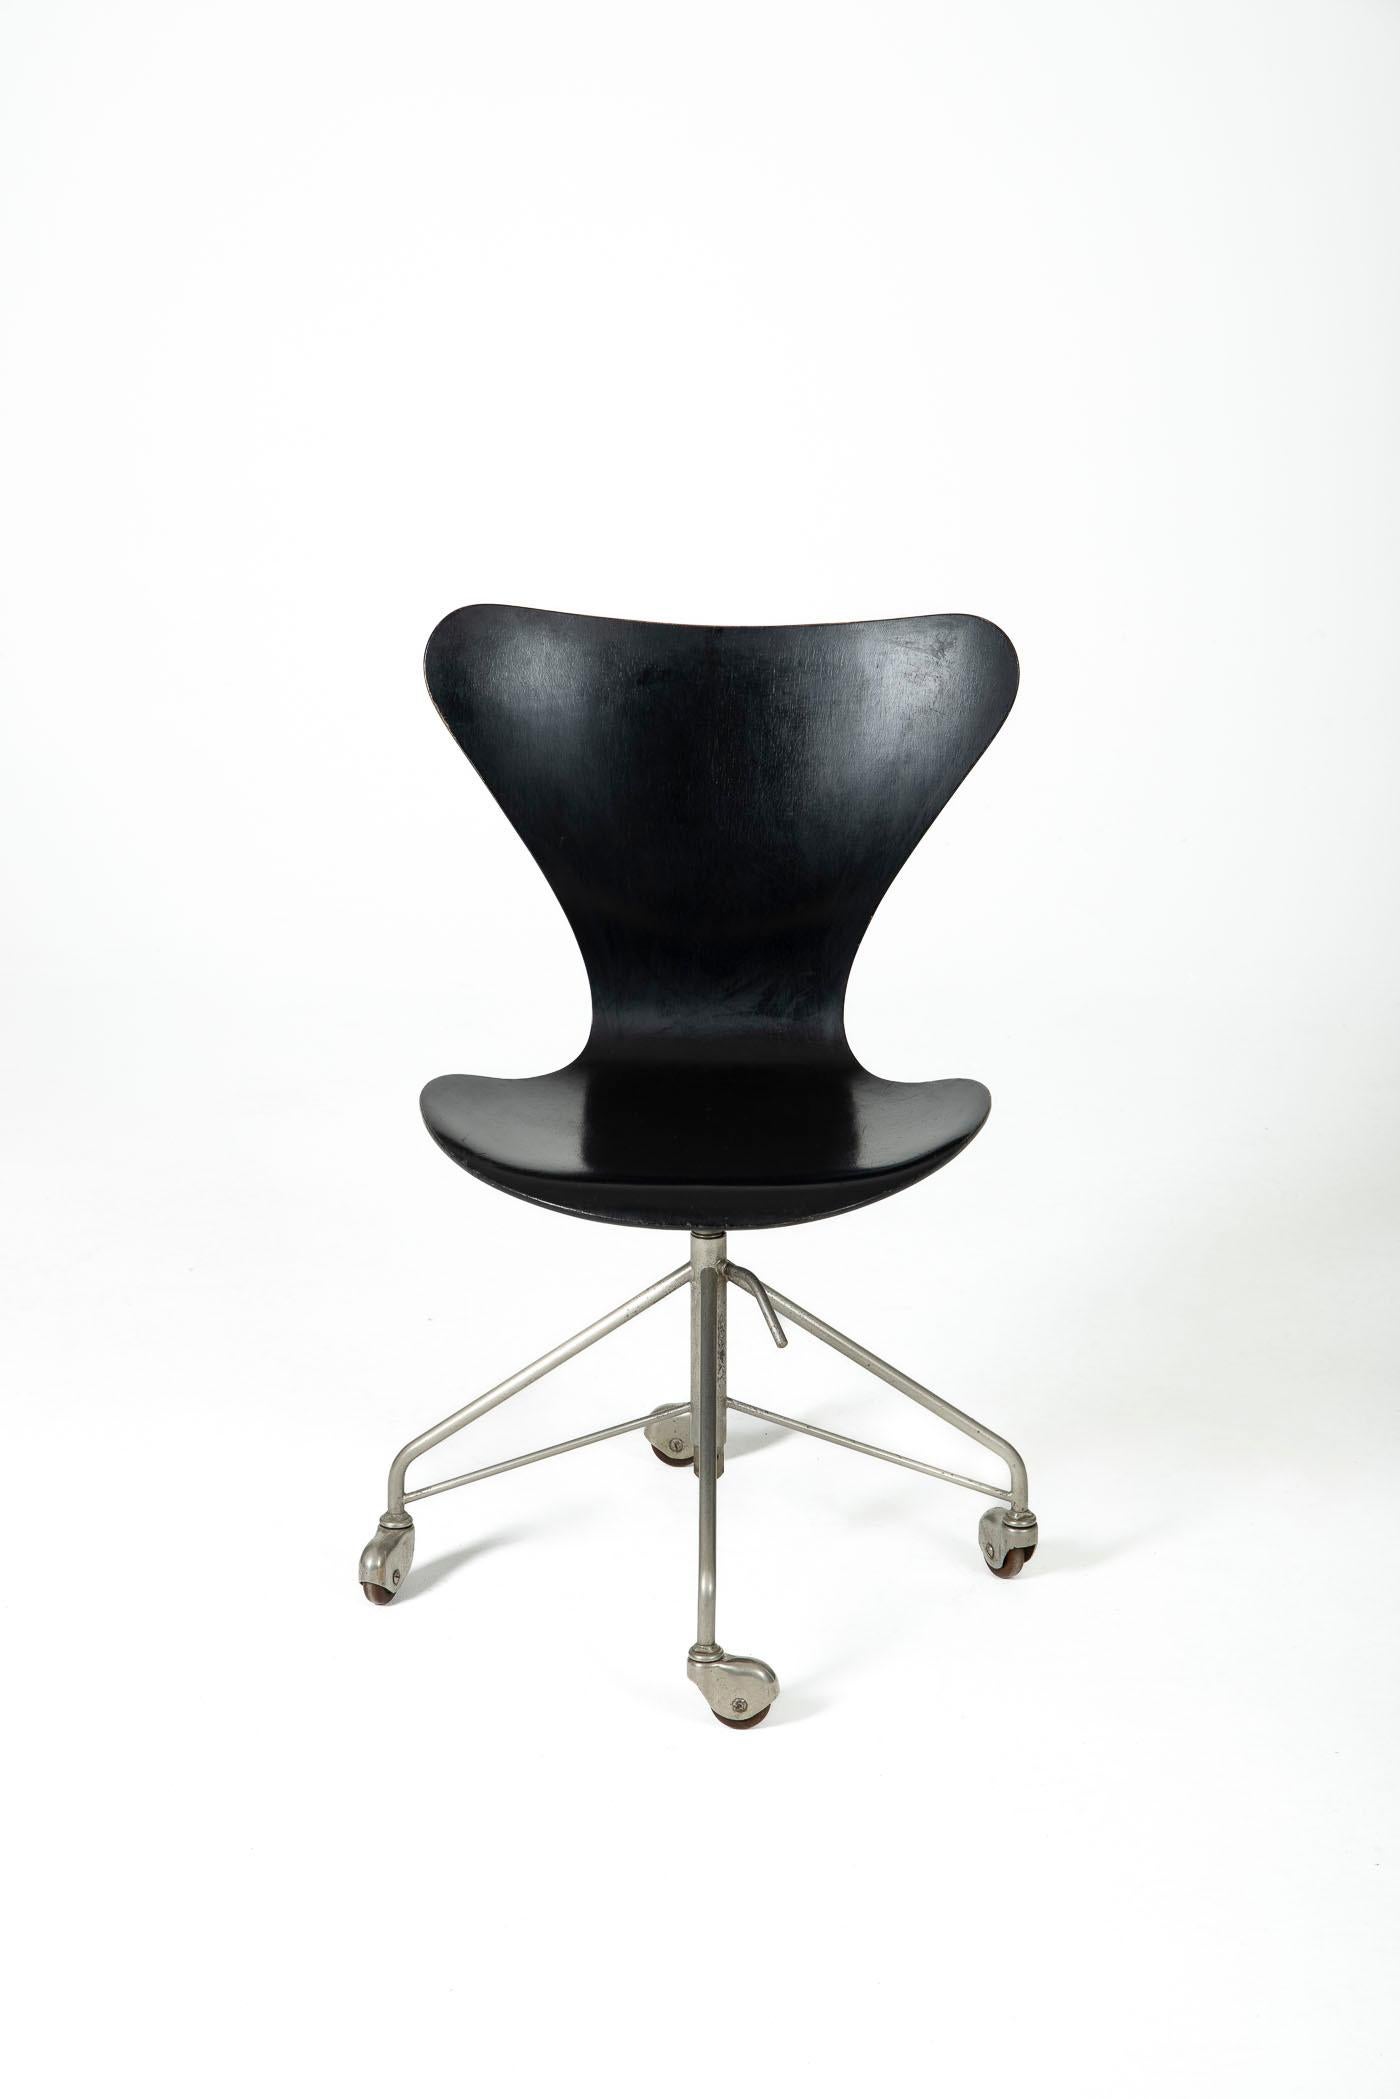 Chaise de bureau, modèle 3117. Il fait partie des 5 premières éditions, unique fauteuil de collection.
Conçu par Arne Jacobsen pour Fritz Hansen. La hauteur du siège est réglable. Présente de légers signes d'usure, mais est en bon état.